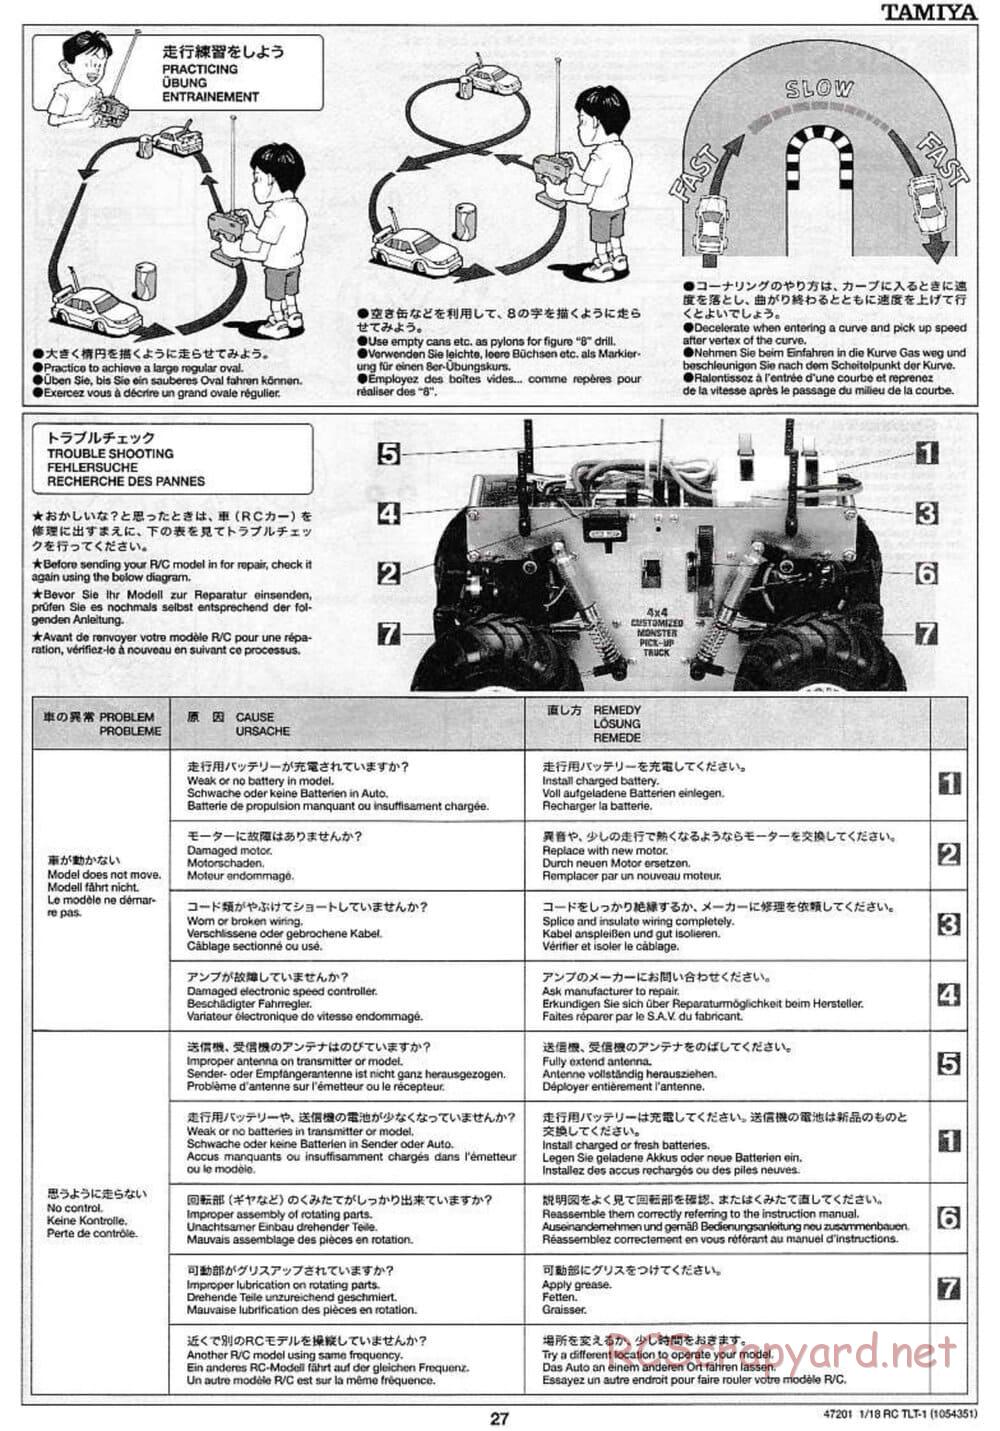 Tamiya - Rock Buster - TLT-1 Chassis - Manual - Page 27